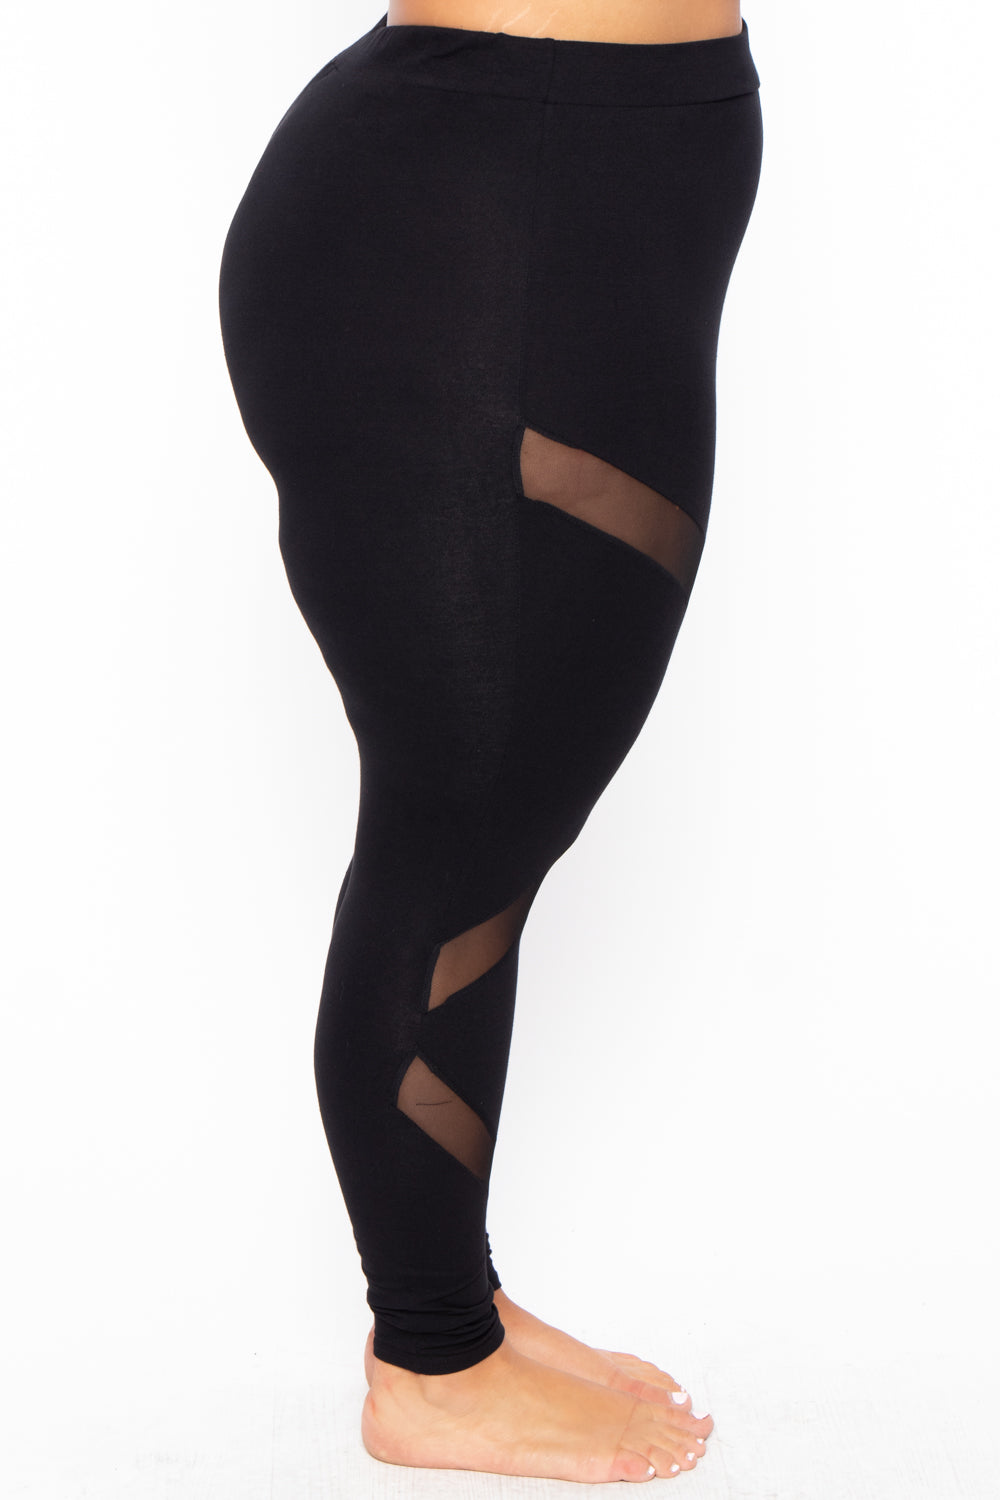 Plus size thermal leggings curvy in black, 4.99€ | Celestino